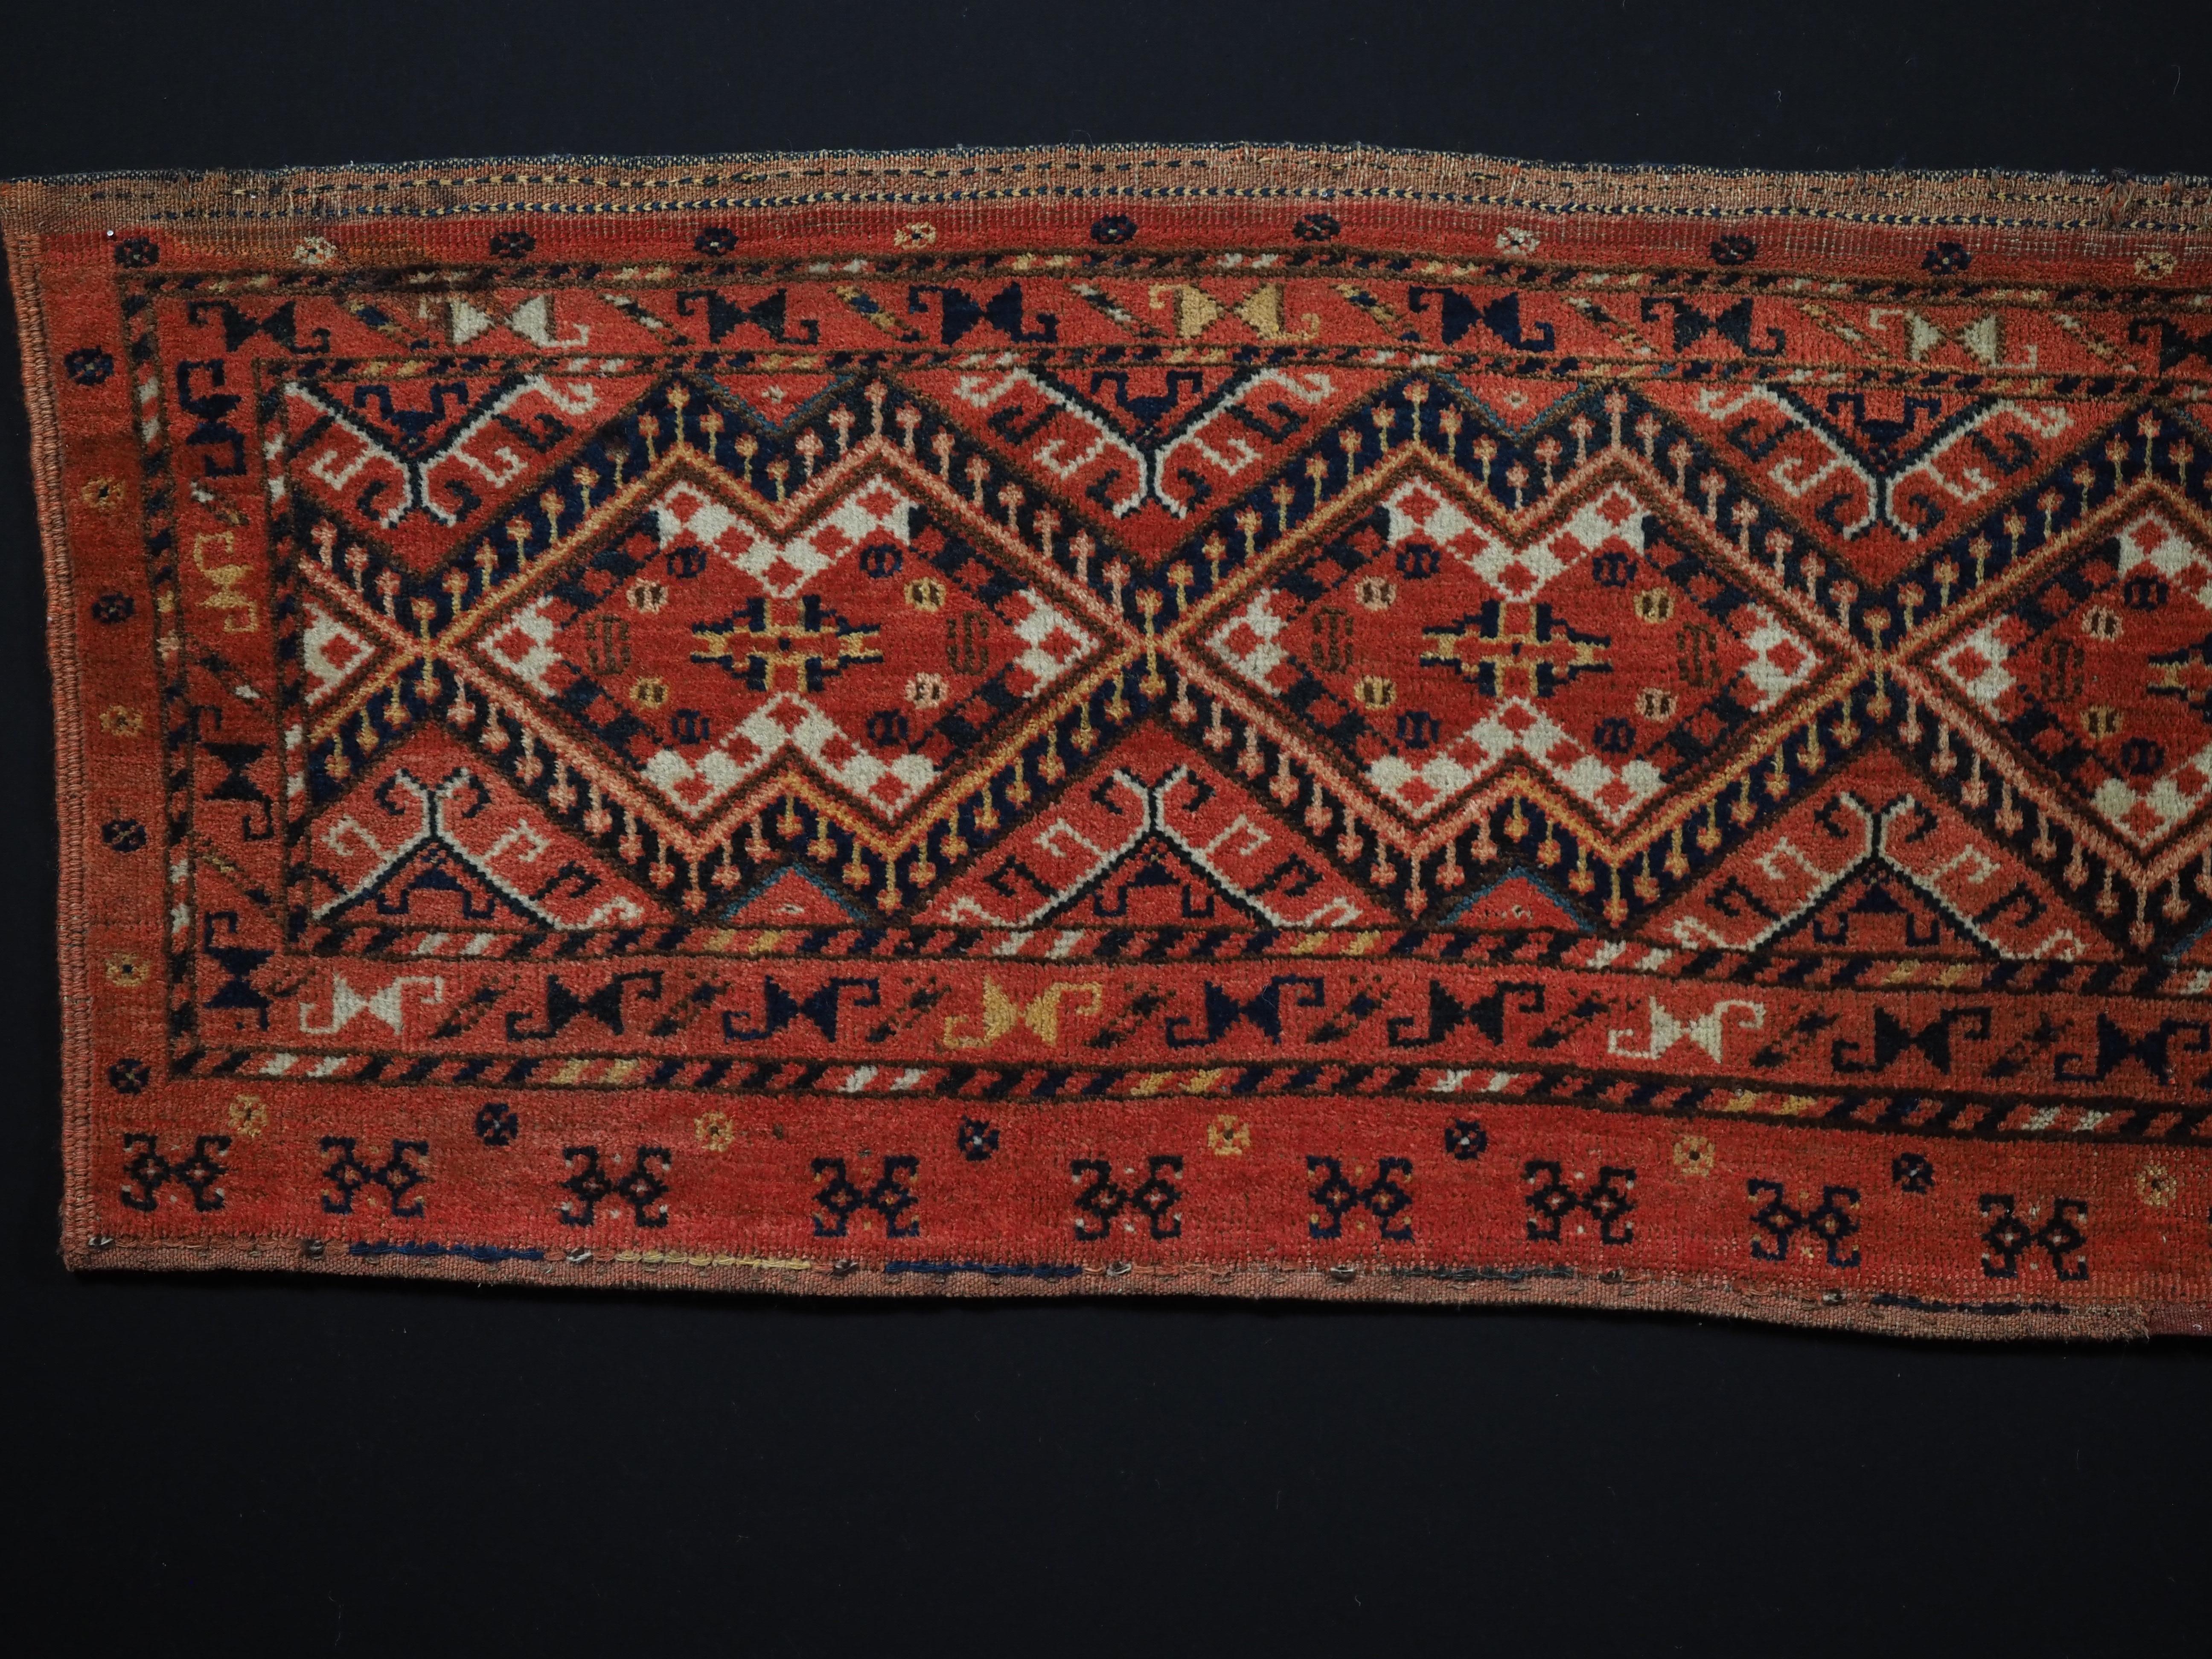 Größe: 5ft 7in x 1ft 6in (170 x 46cm)

Antike türkische Ersari Beshir Torba mit Ikat-Design.

Um 1890.

Torba sind flache Wandsäcke, die vor allem in Zelten oder Jurten zur Aufbewahrung von persönlichen Gegenständen verwendet werden, aber auch die